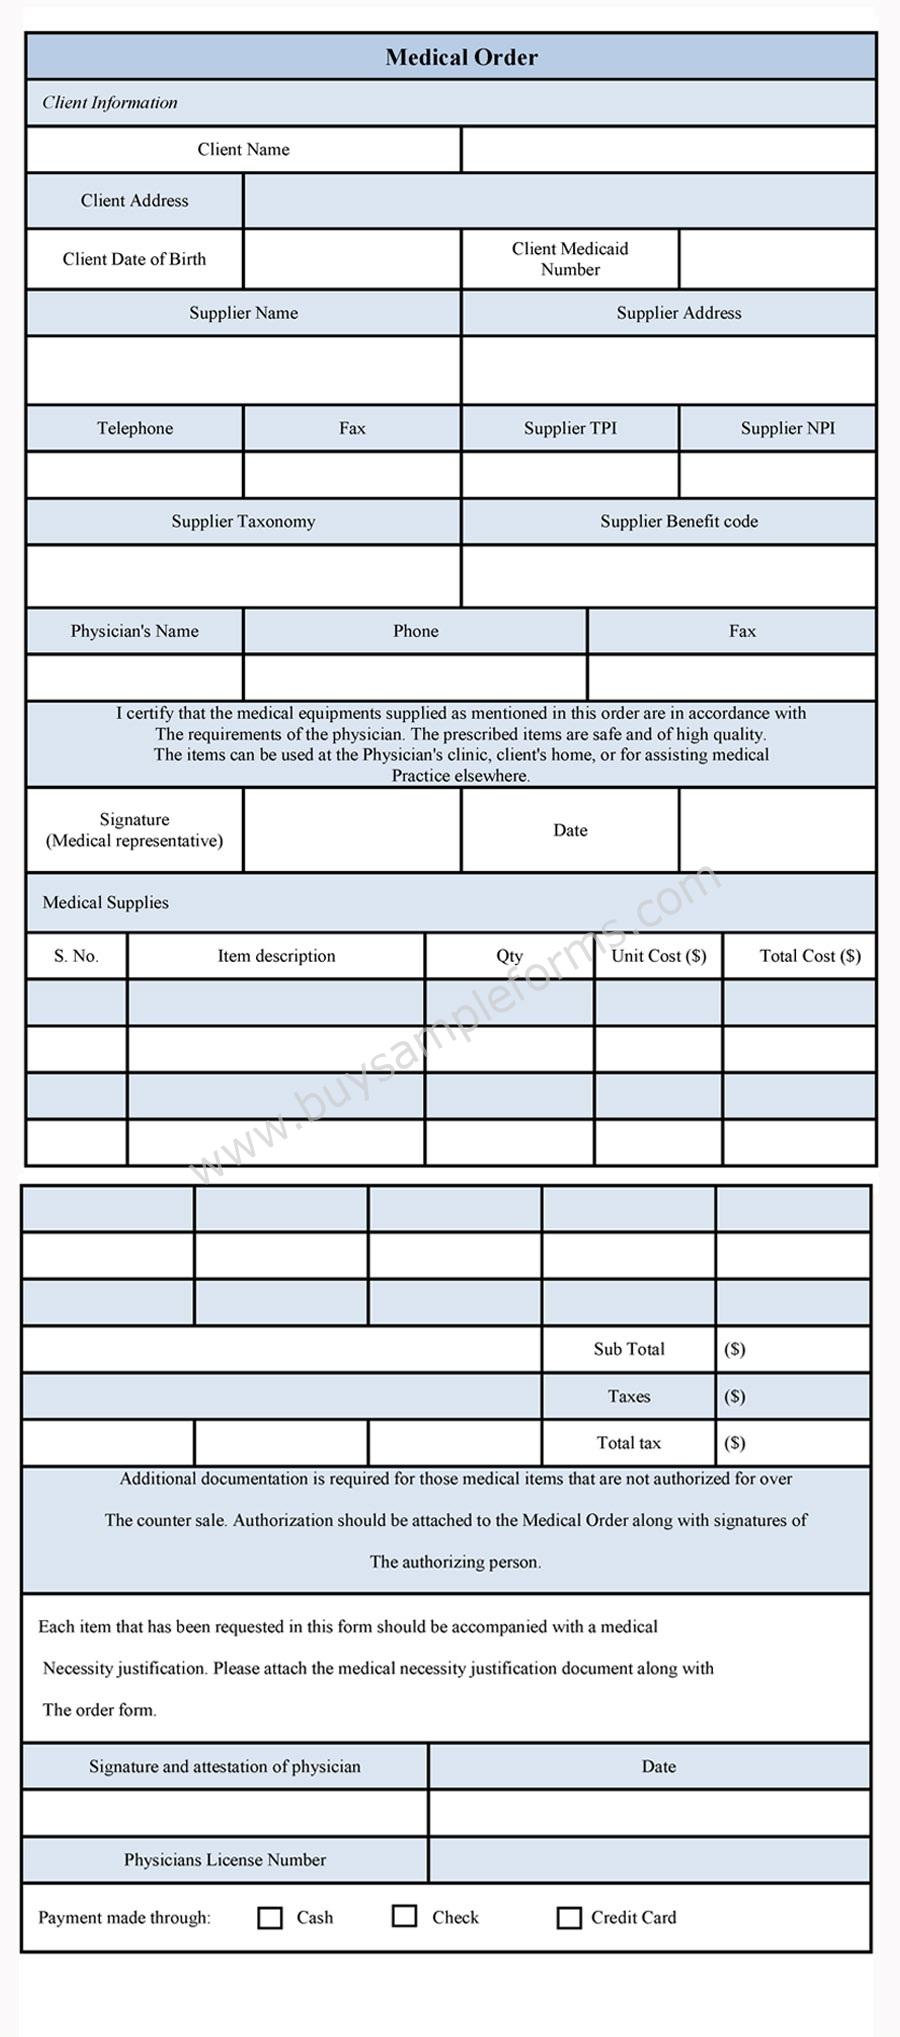 Sample Medical Order Form